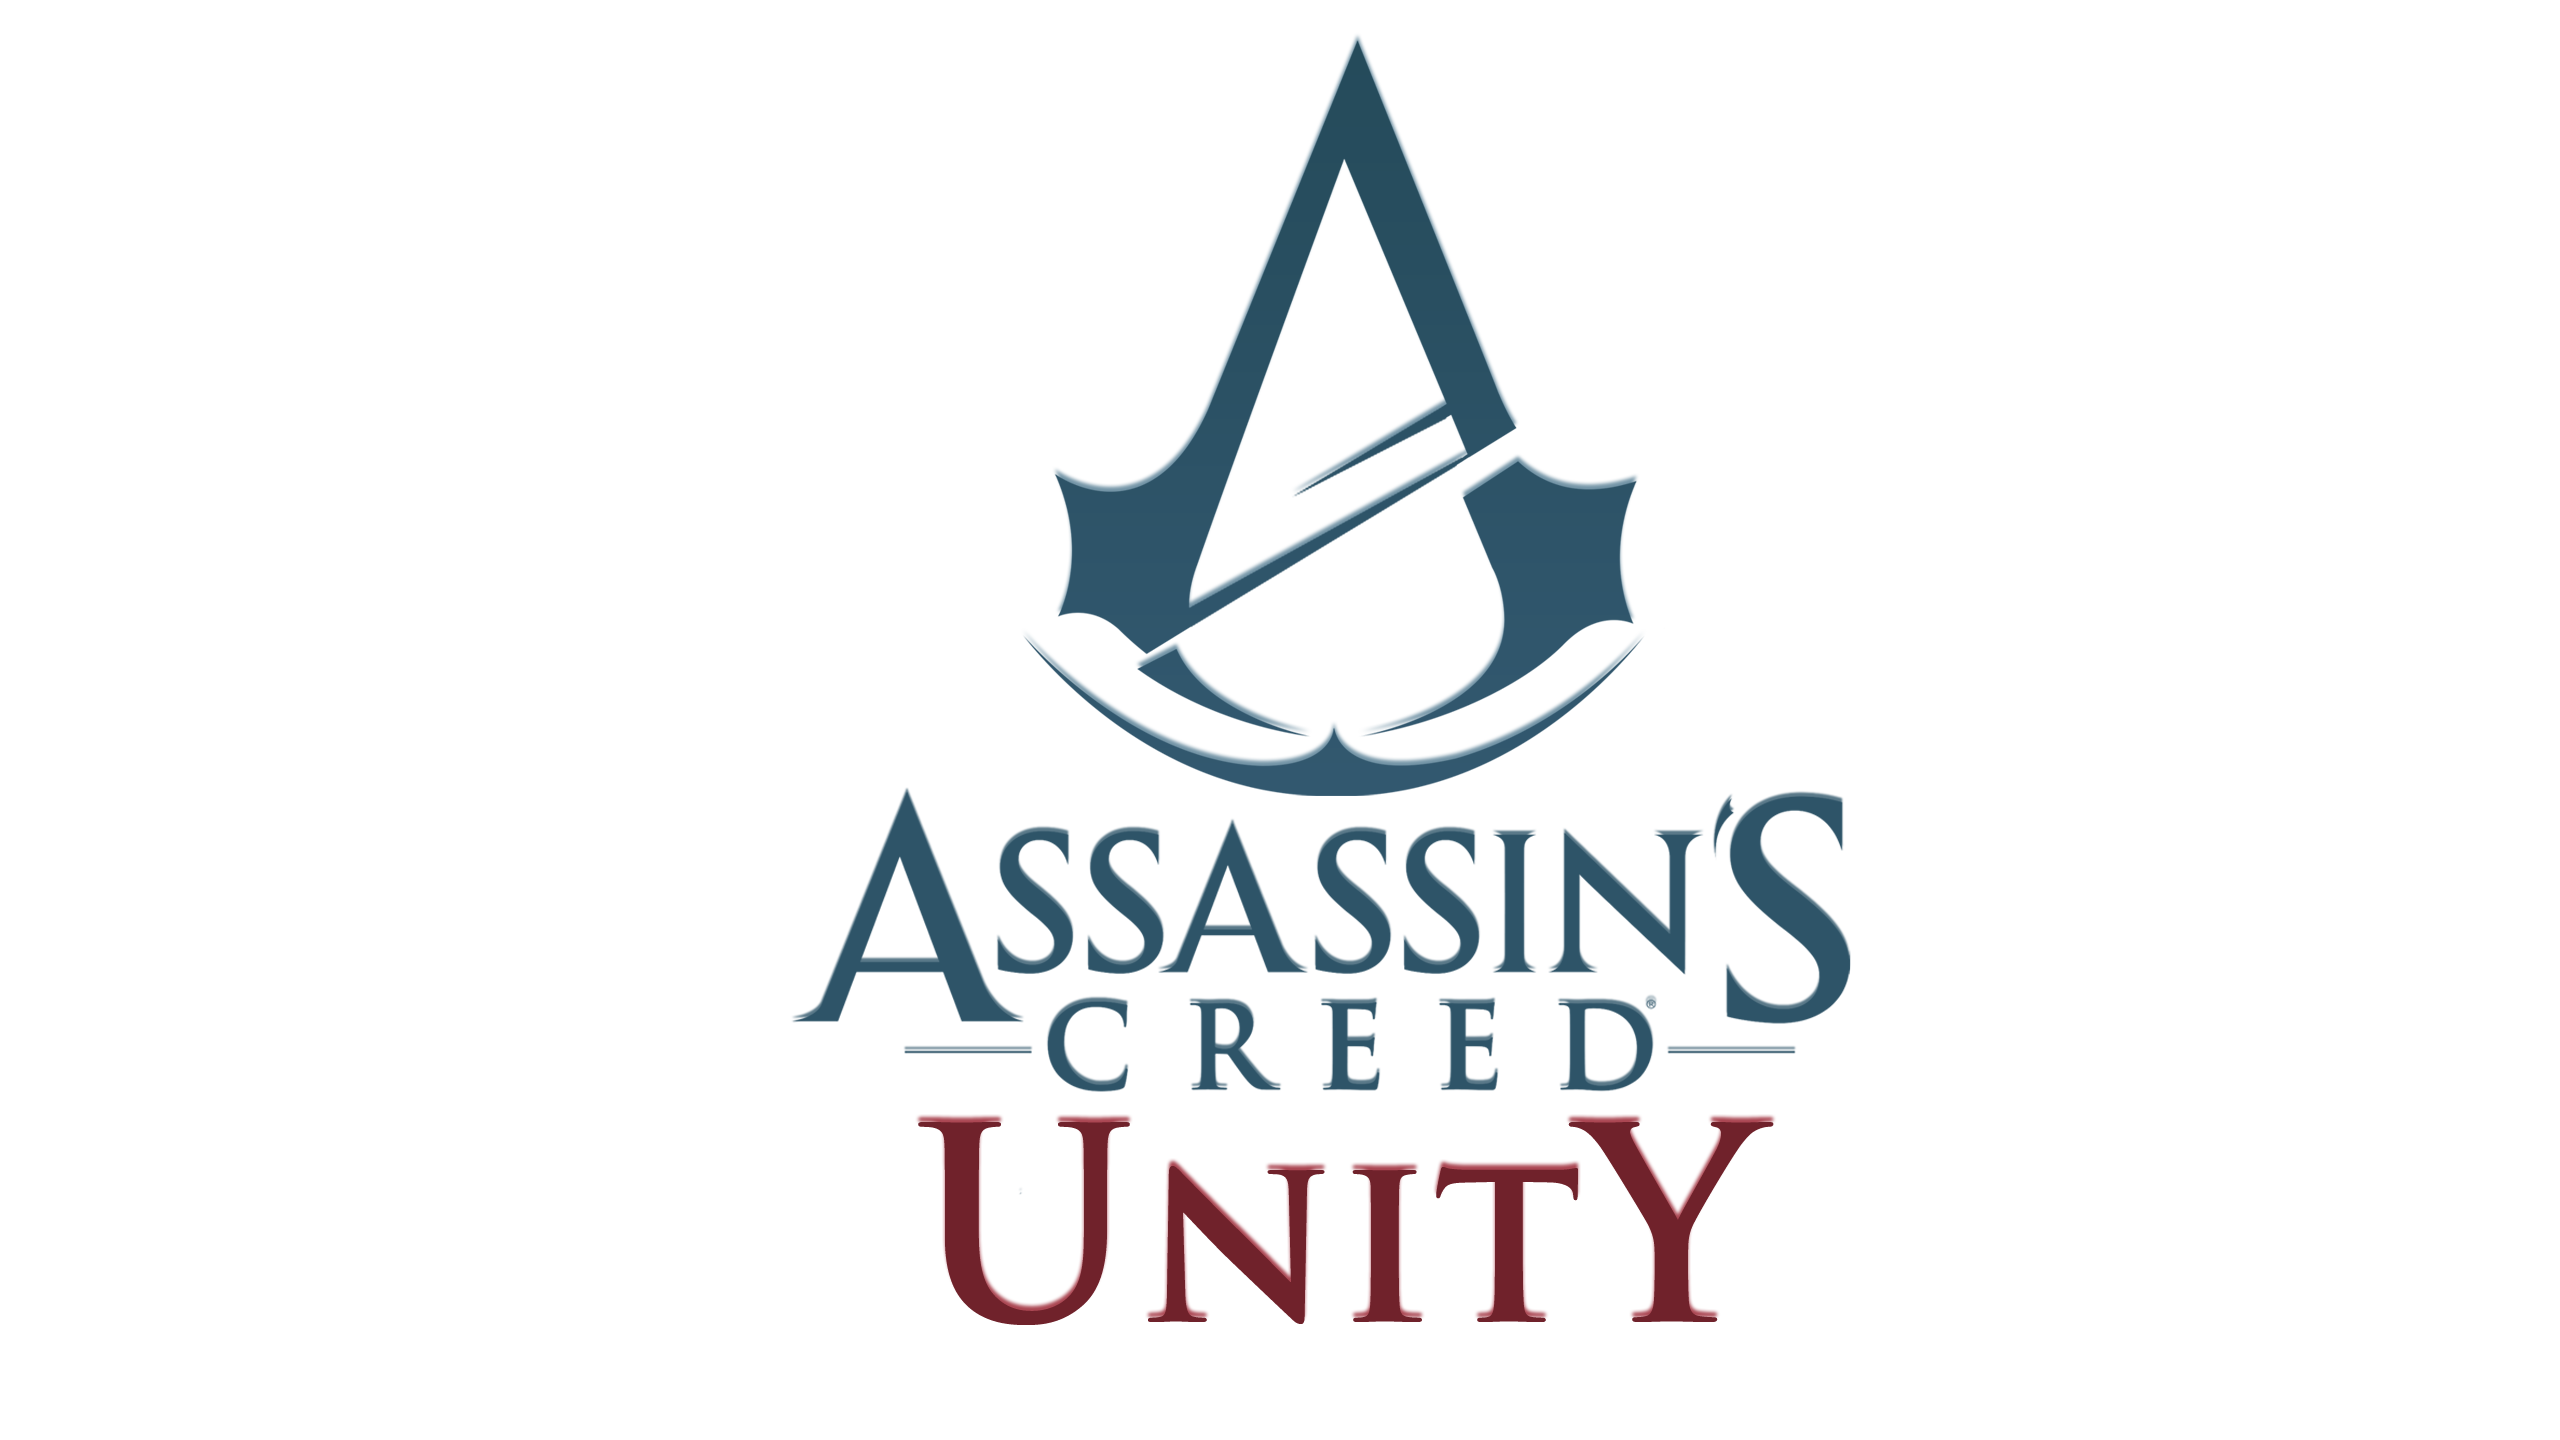 Assassin’s Creed Unity, nuovi dettagli sulla templare Elise